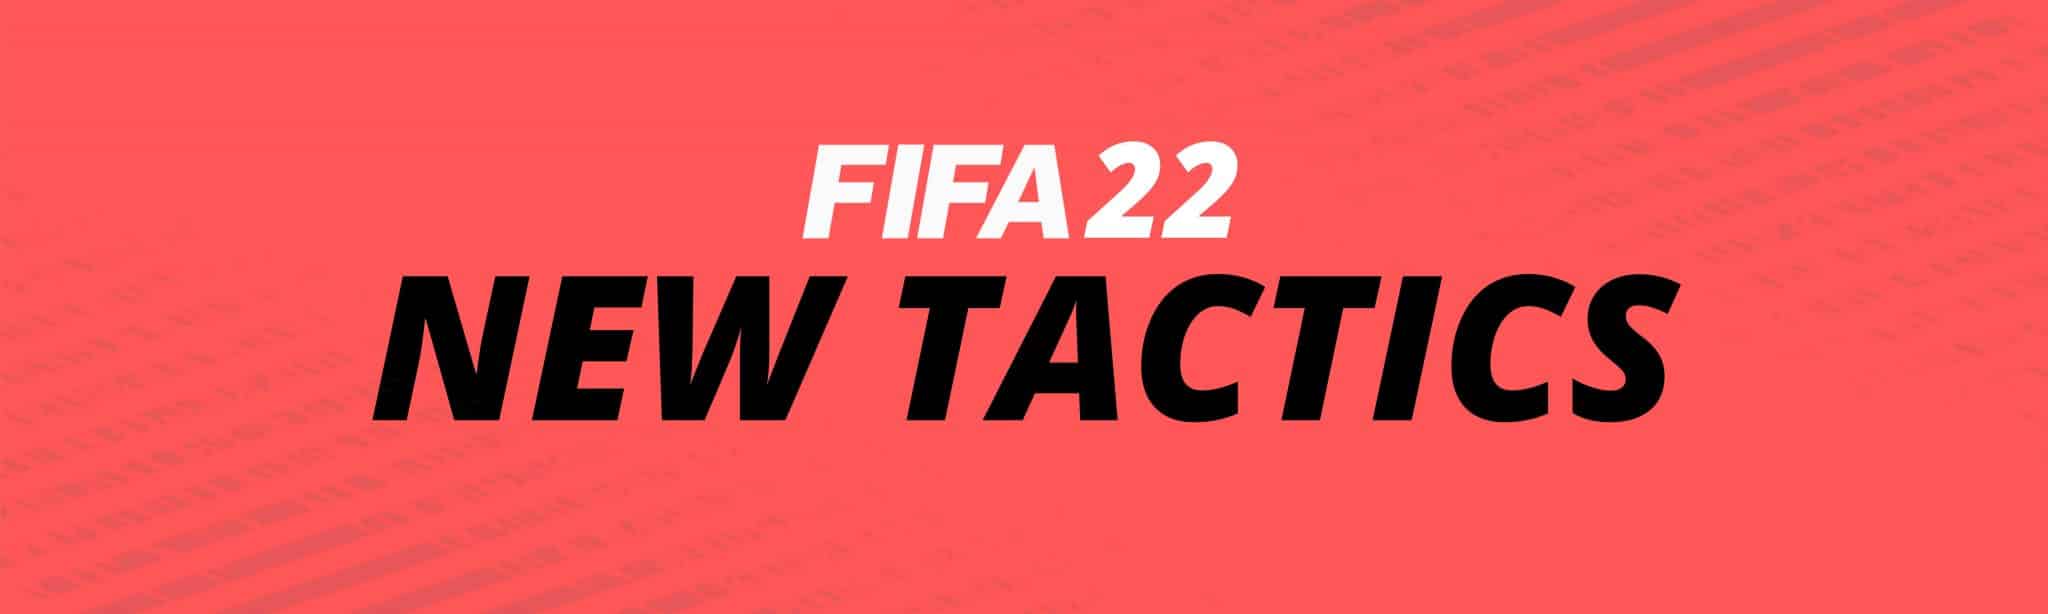 FIFA 22 CUSTOM TACTICS TIPS